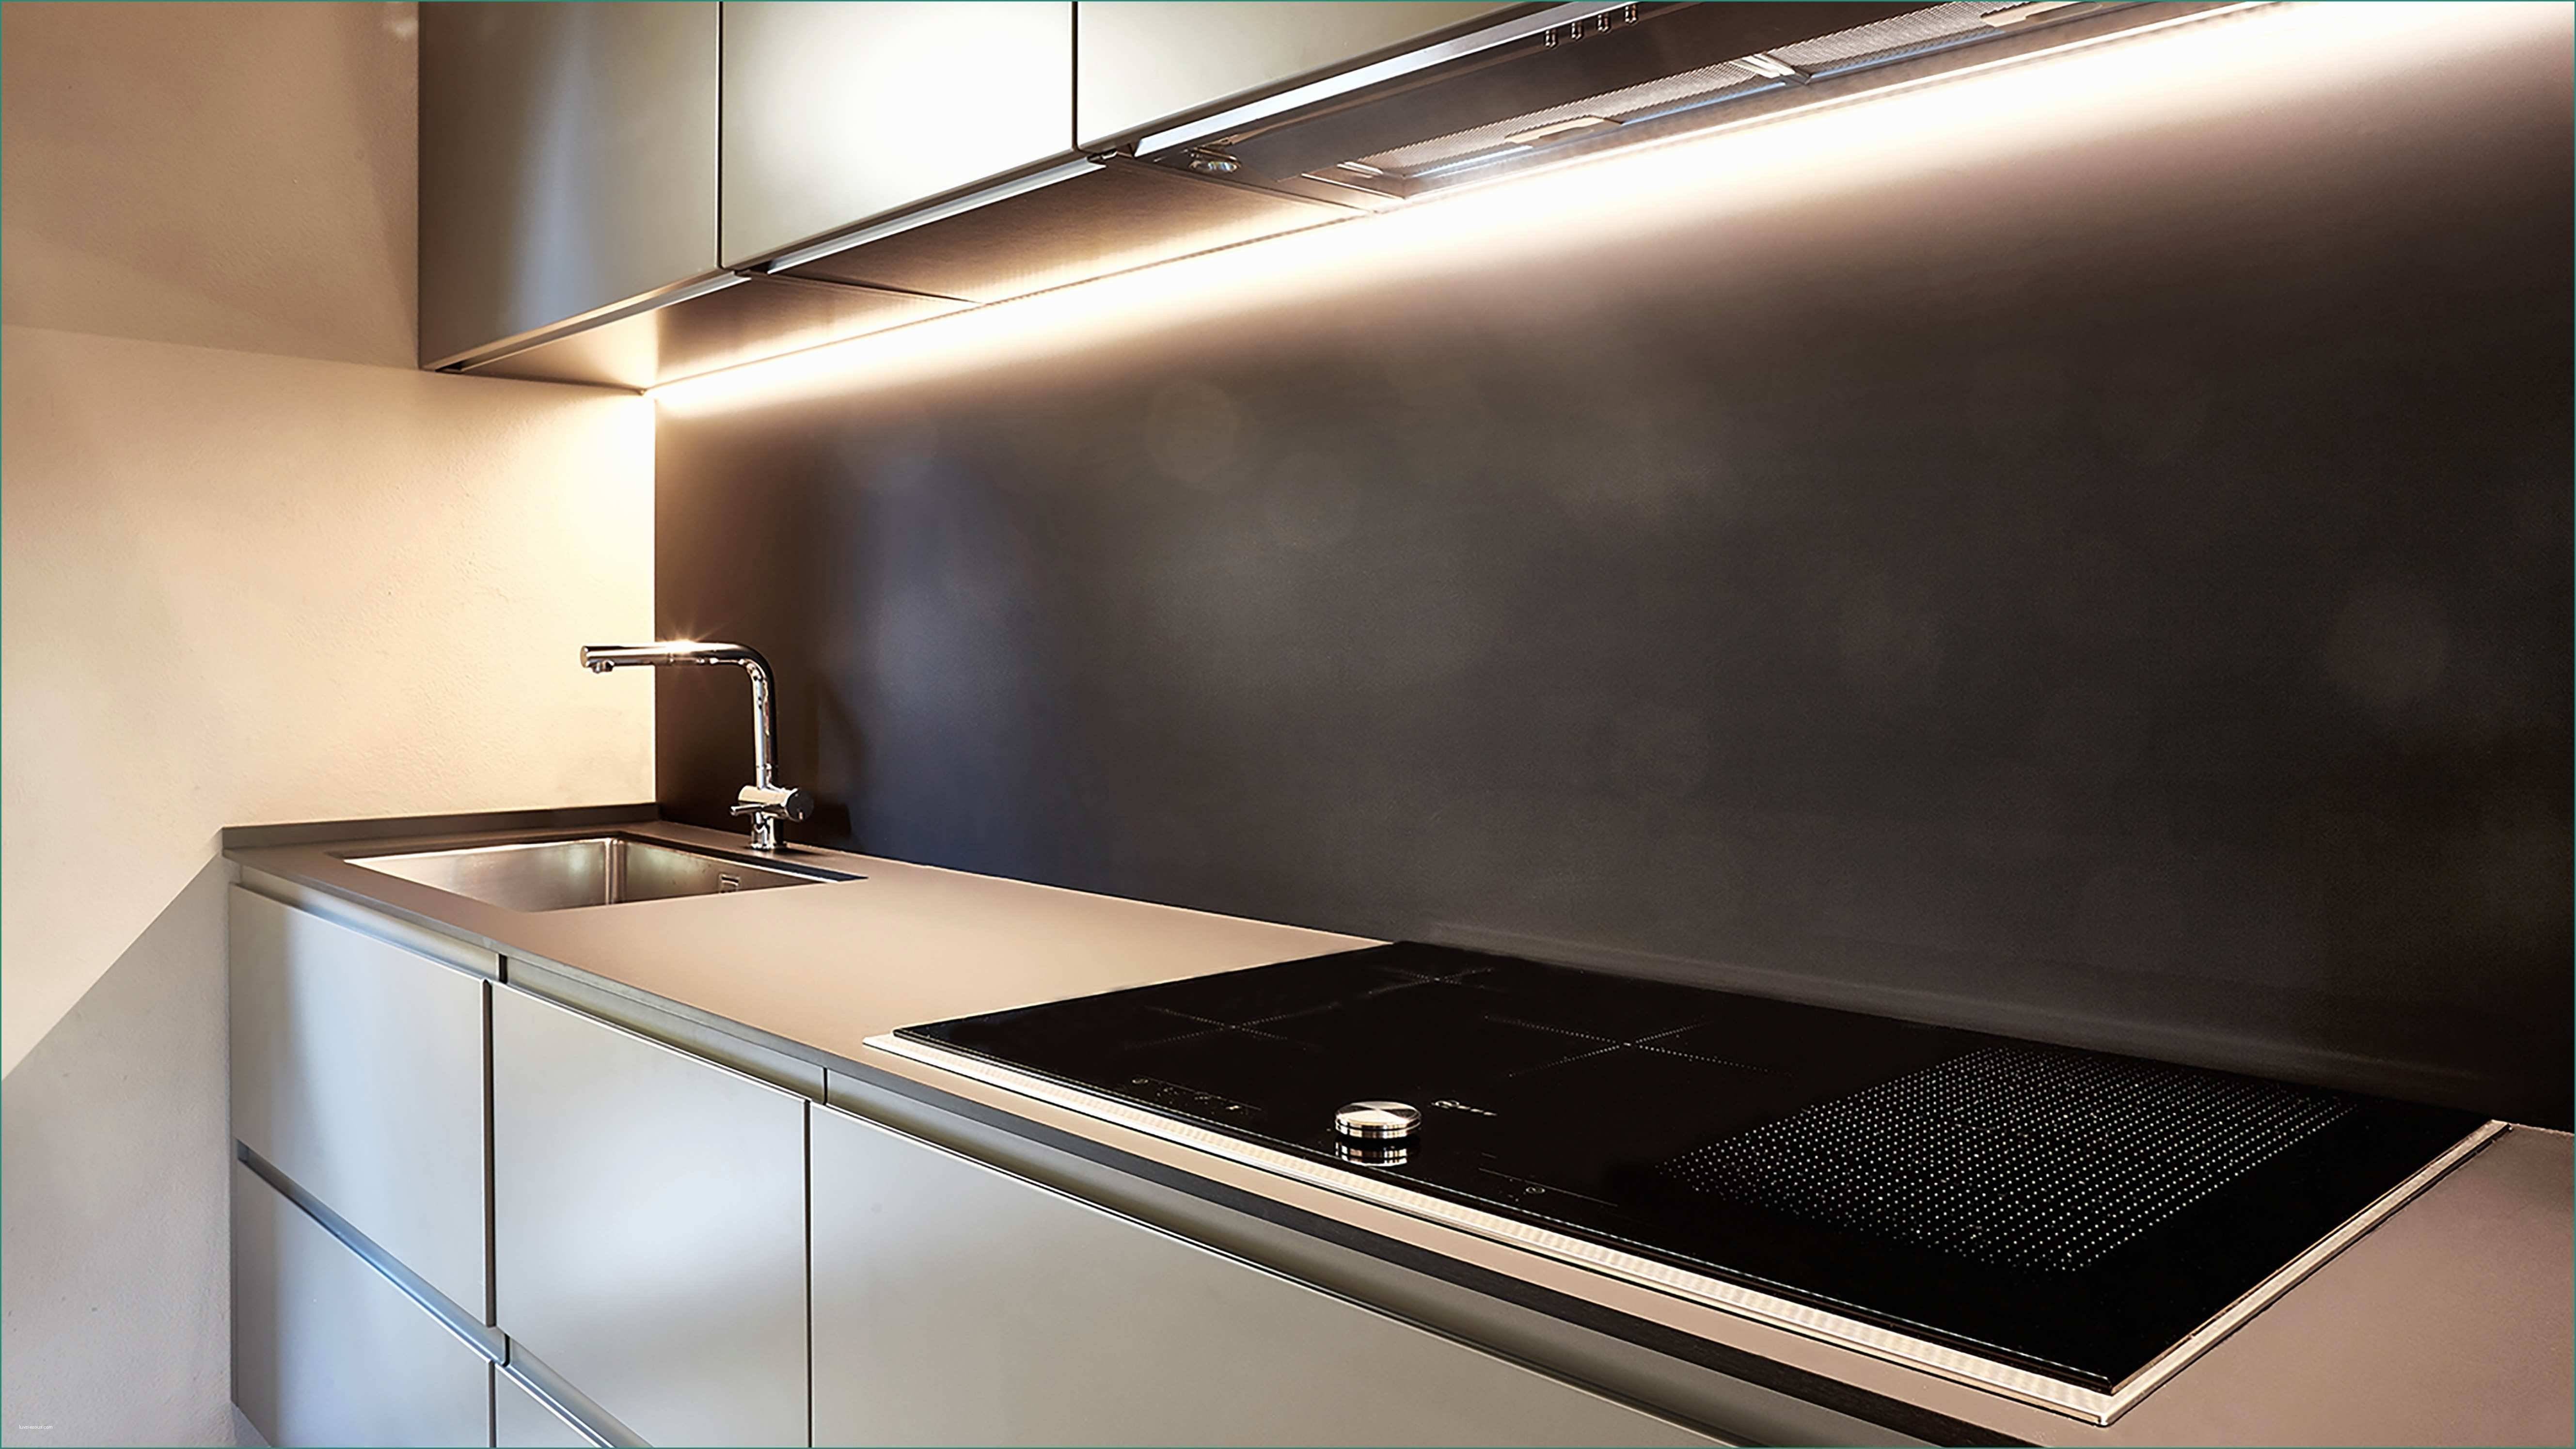 Подсветка рабочей зоны на кухне: варианты освещения (фото) - led свет